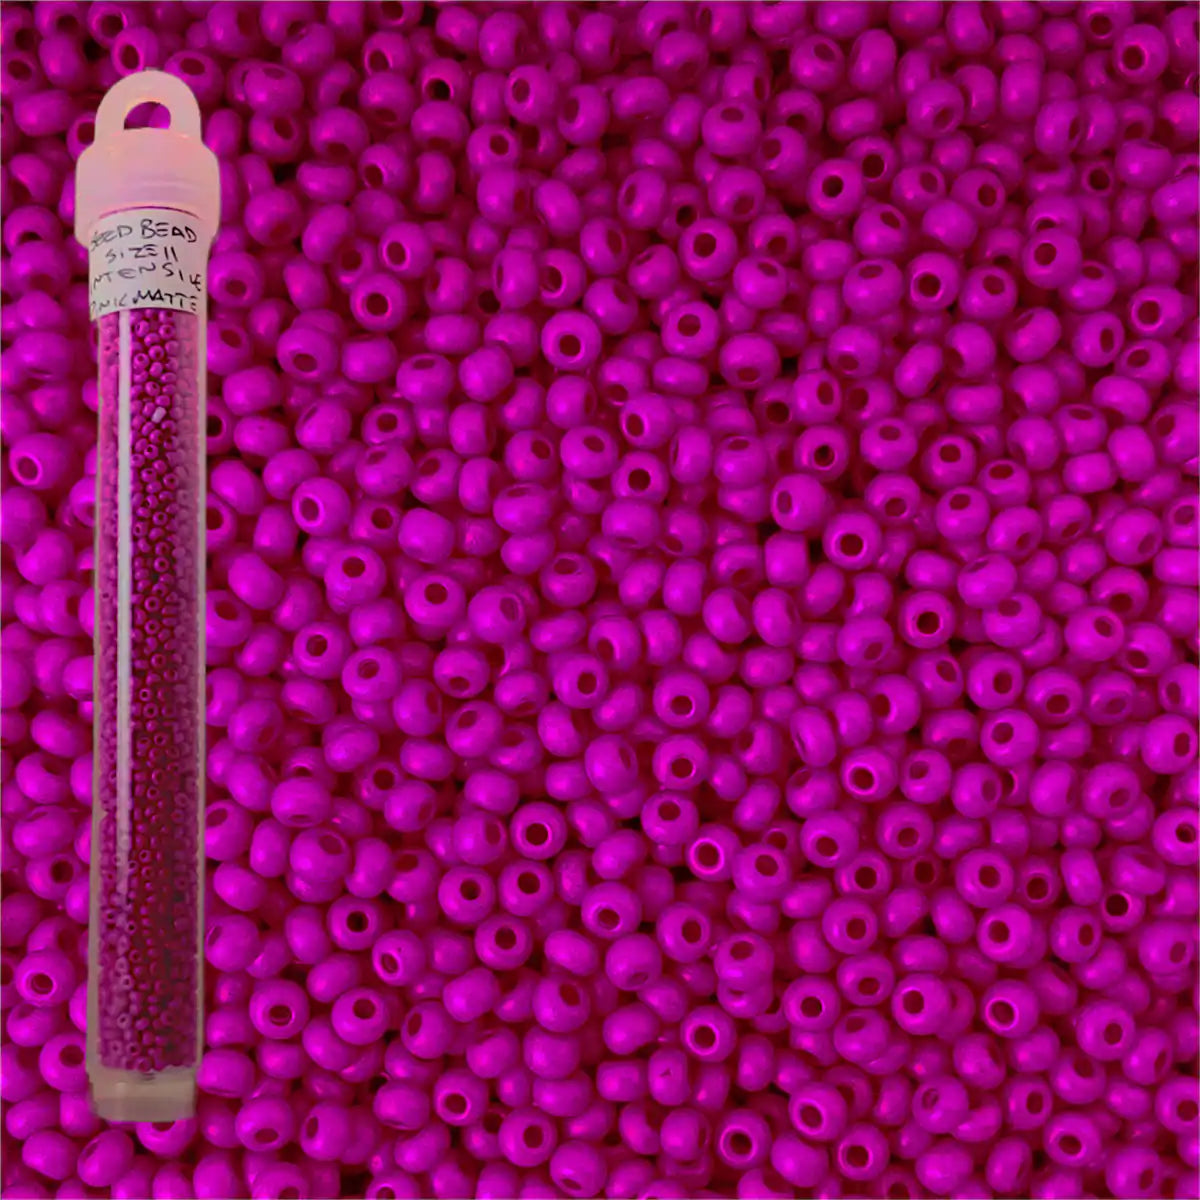 Miyuki seed beads intensive pink matte size 11